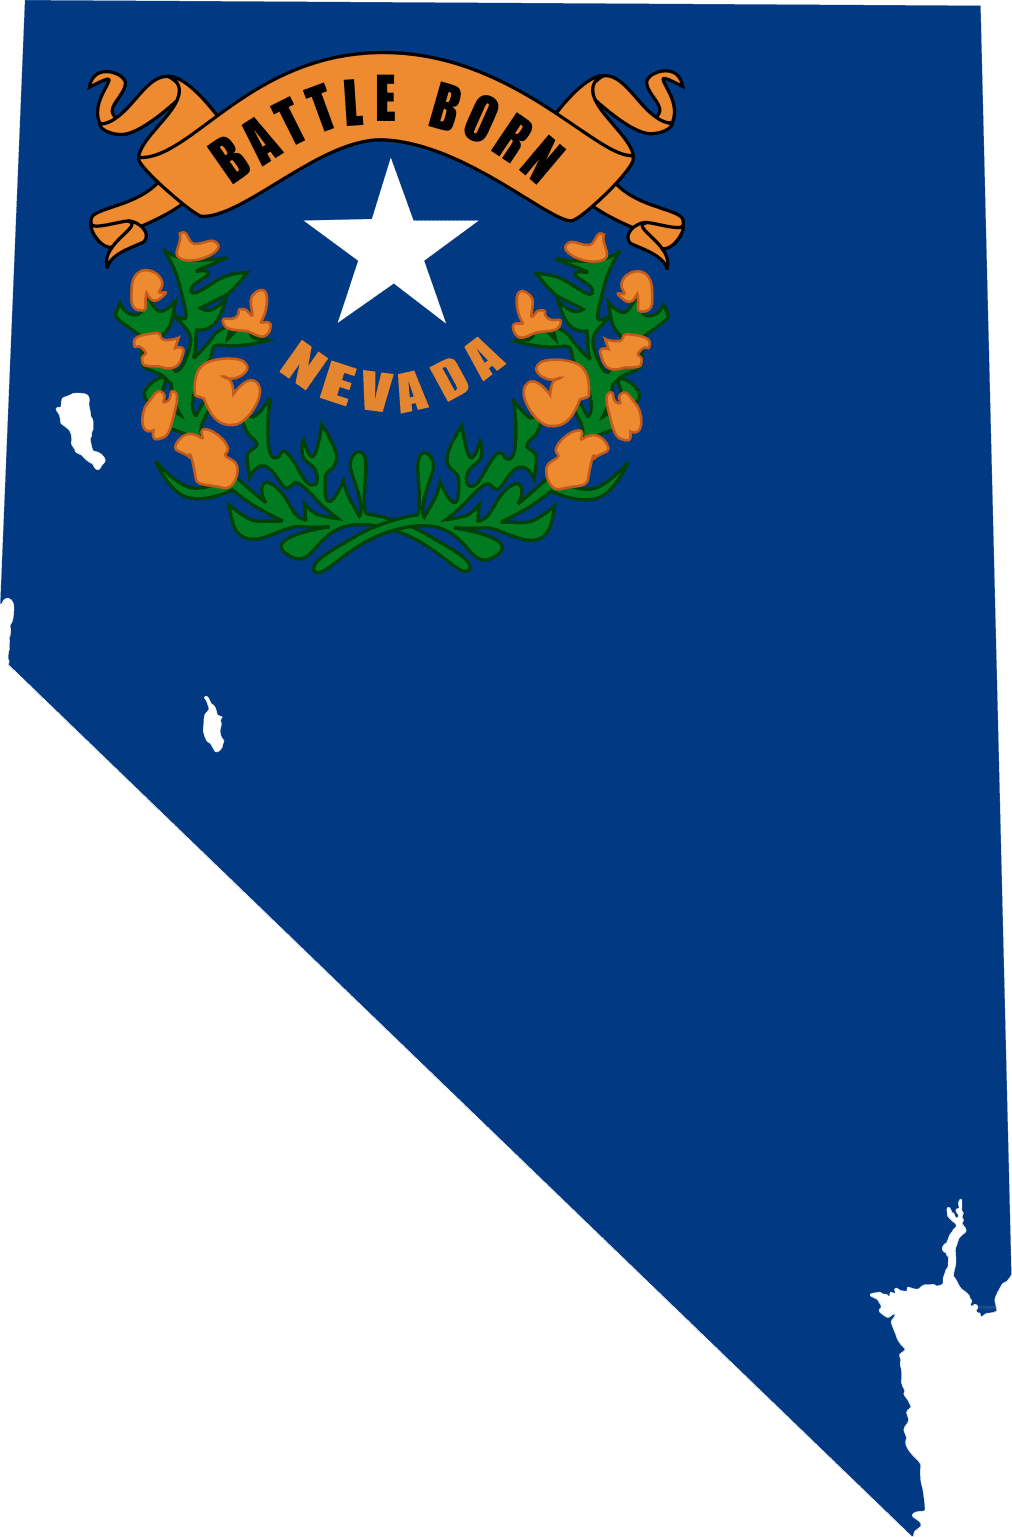 Nevada_bayrak_harita.png